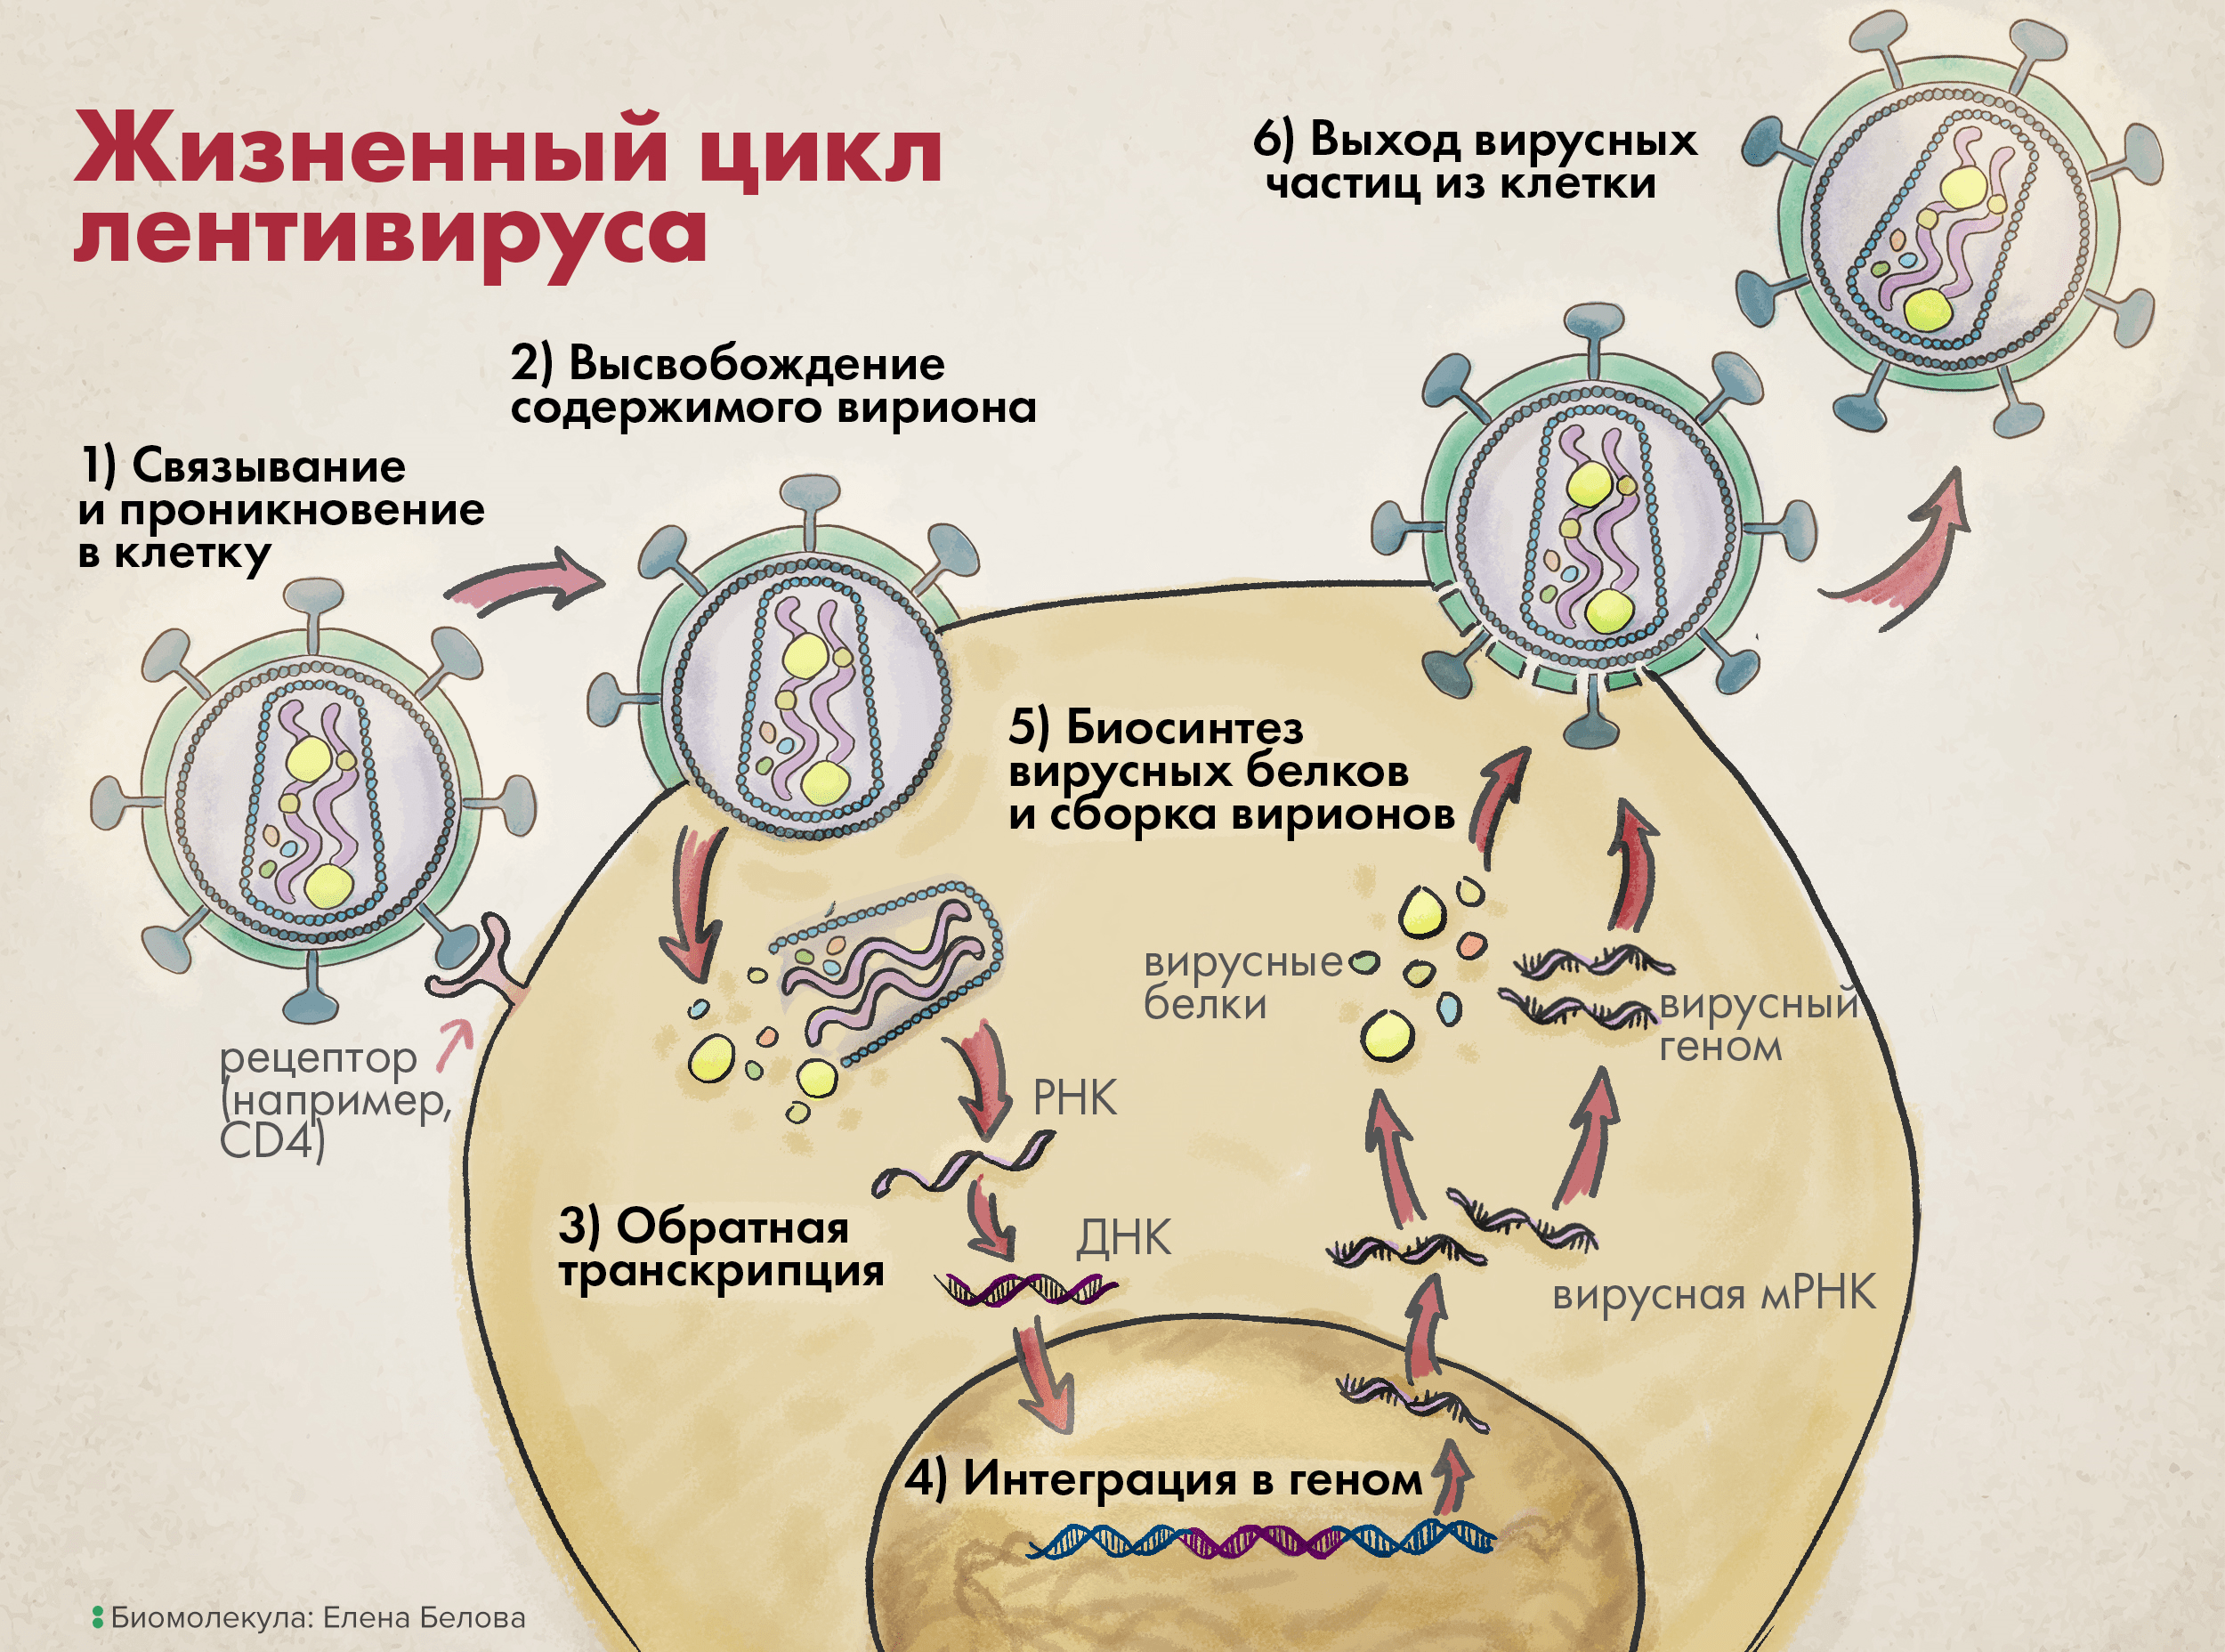 Жизненный цикл лентивируса